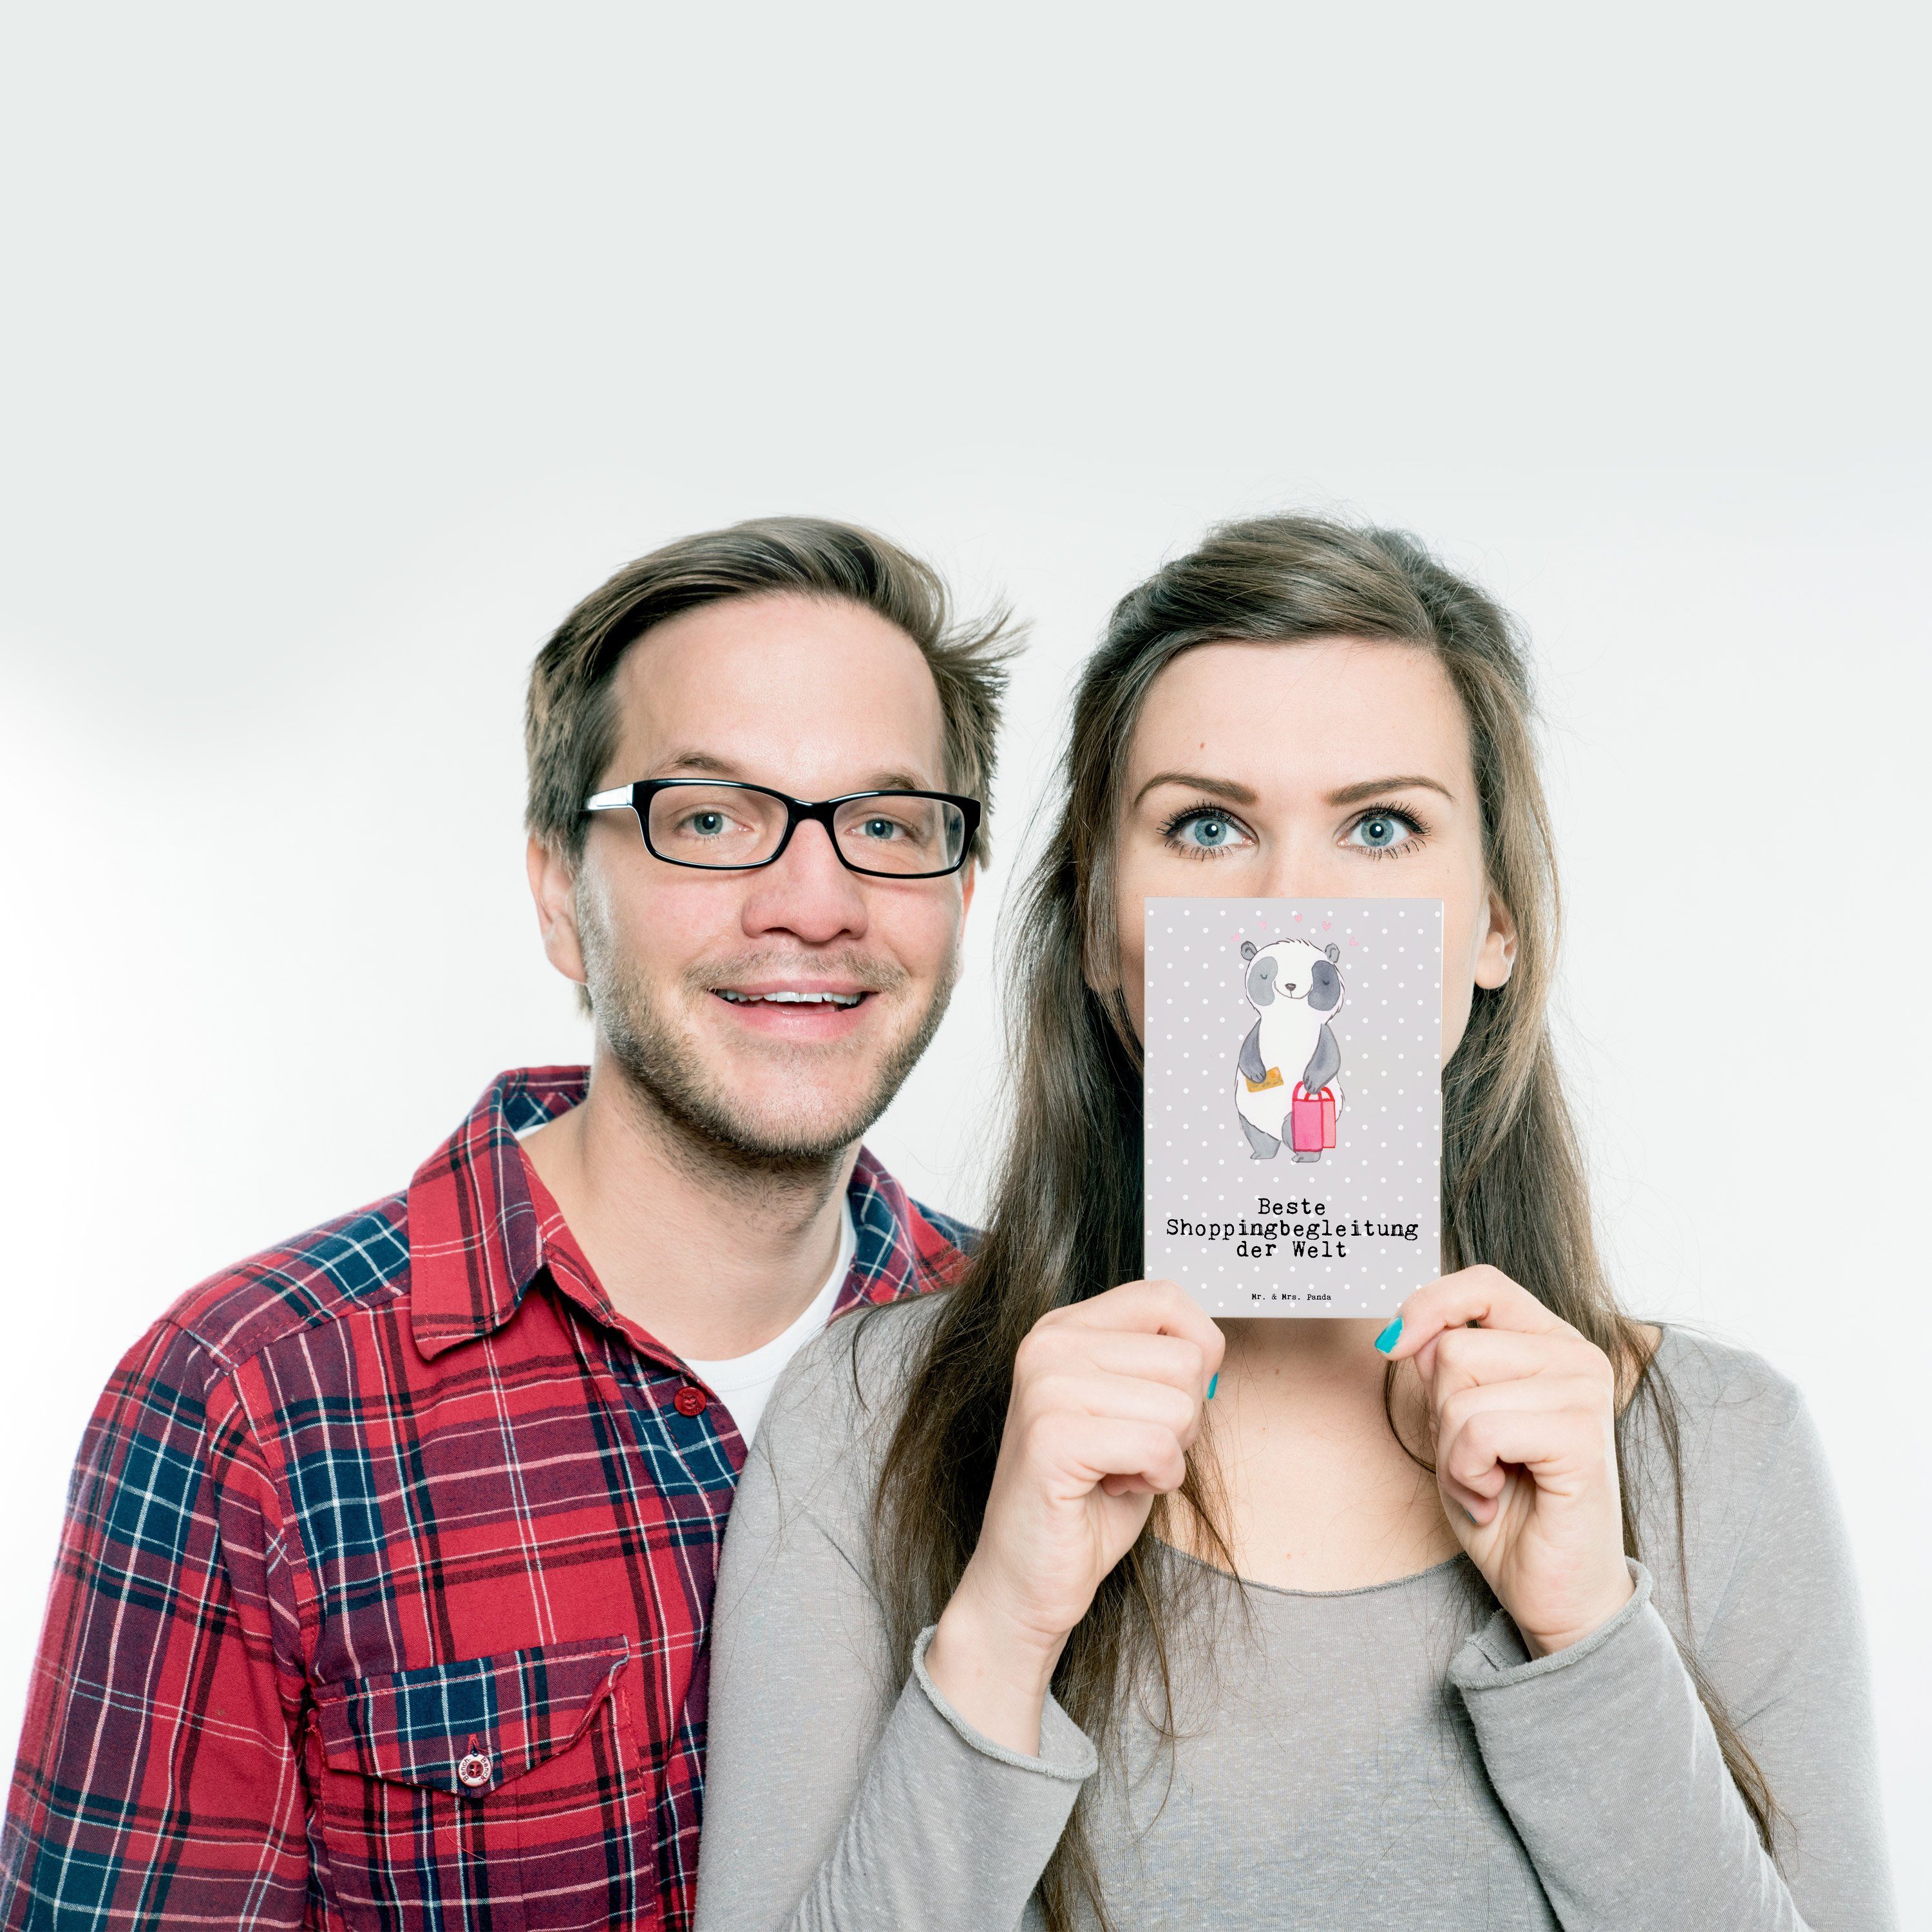 Mr. & Mrs. Panda Postkarte Shoppingbegleitung Pastell - - Panda Sh Geschenk, Welt Beste Grau der